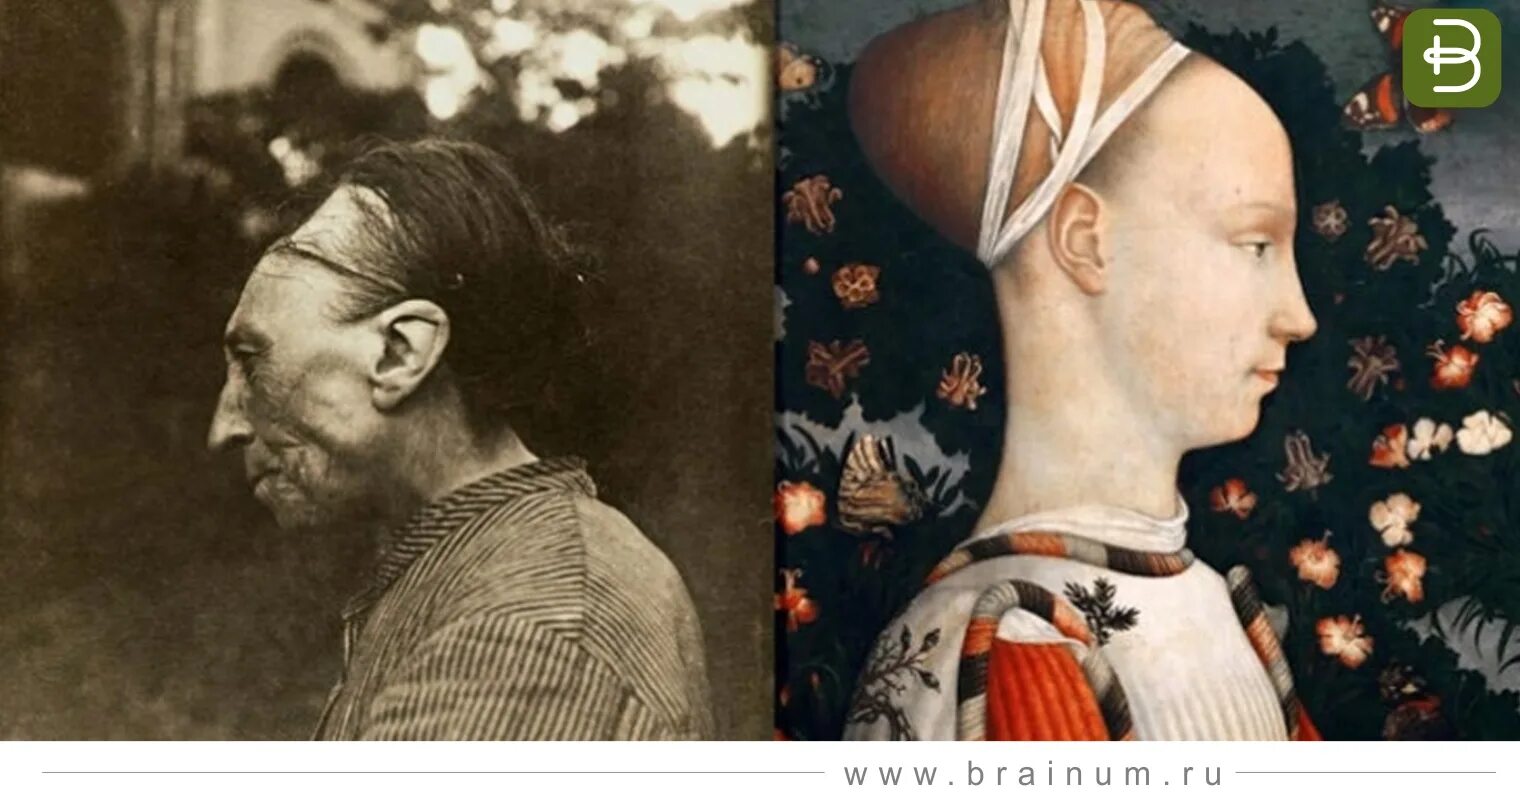 Он не может отличить красоту от уродства. Тулузская деформация головы. Портрет Джиневры д Эсте. Люби с вытенутими черепами. Люди с вытянутыми черепами.